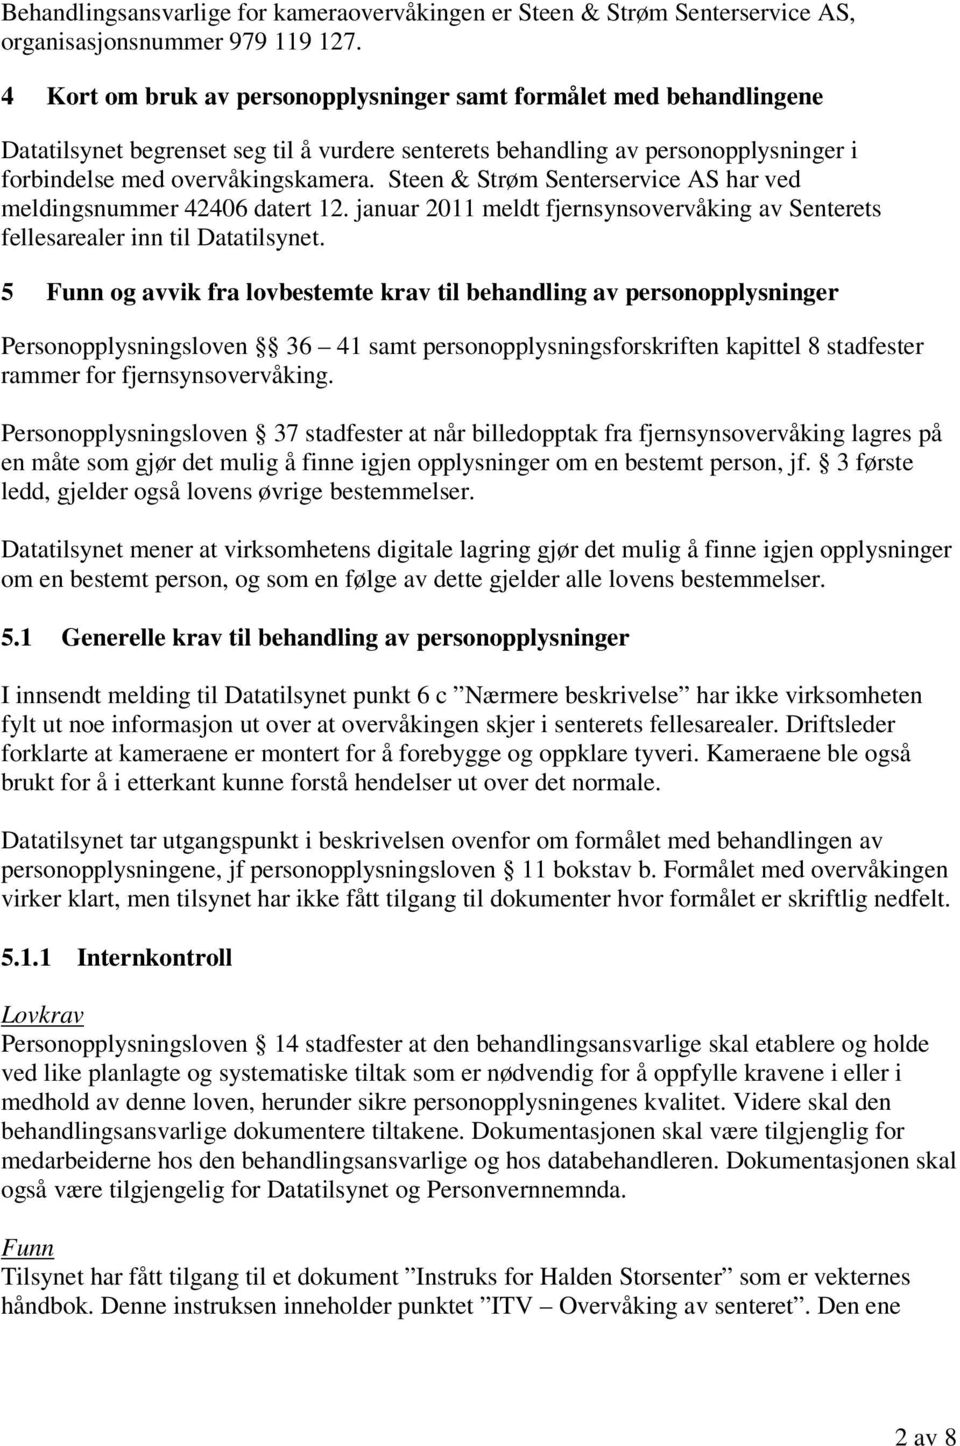 Steen & Strøm Senterservice AS har ved meldingsnummer 42406 datert 12. januar 2011 meldt fjernsynsovervåking av Senterets fellesarealer inn til Datatilsynet.